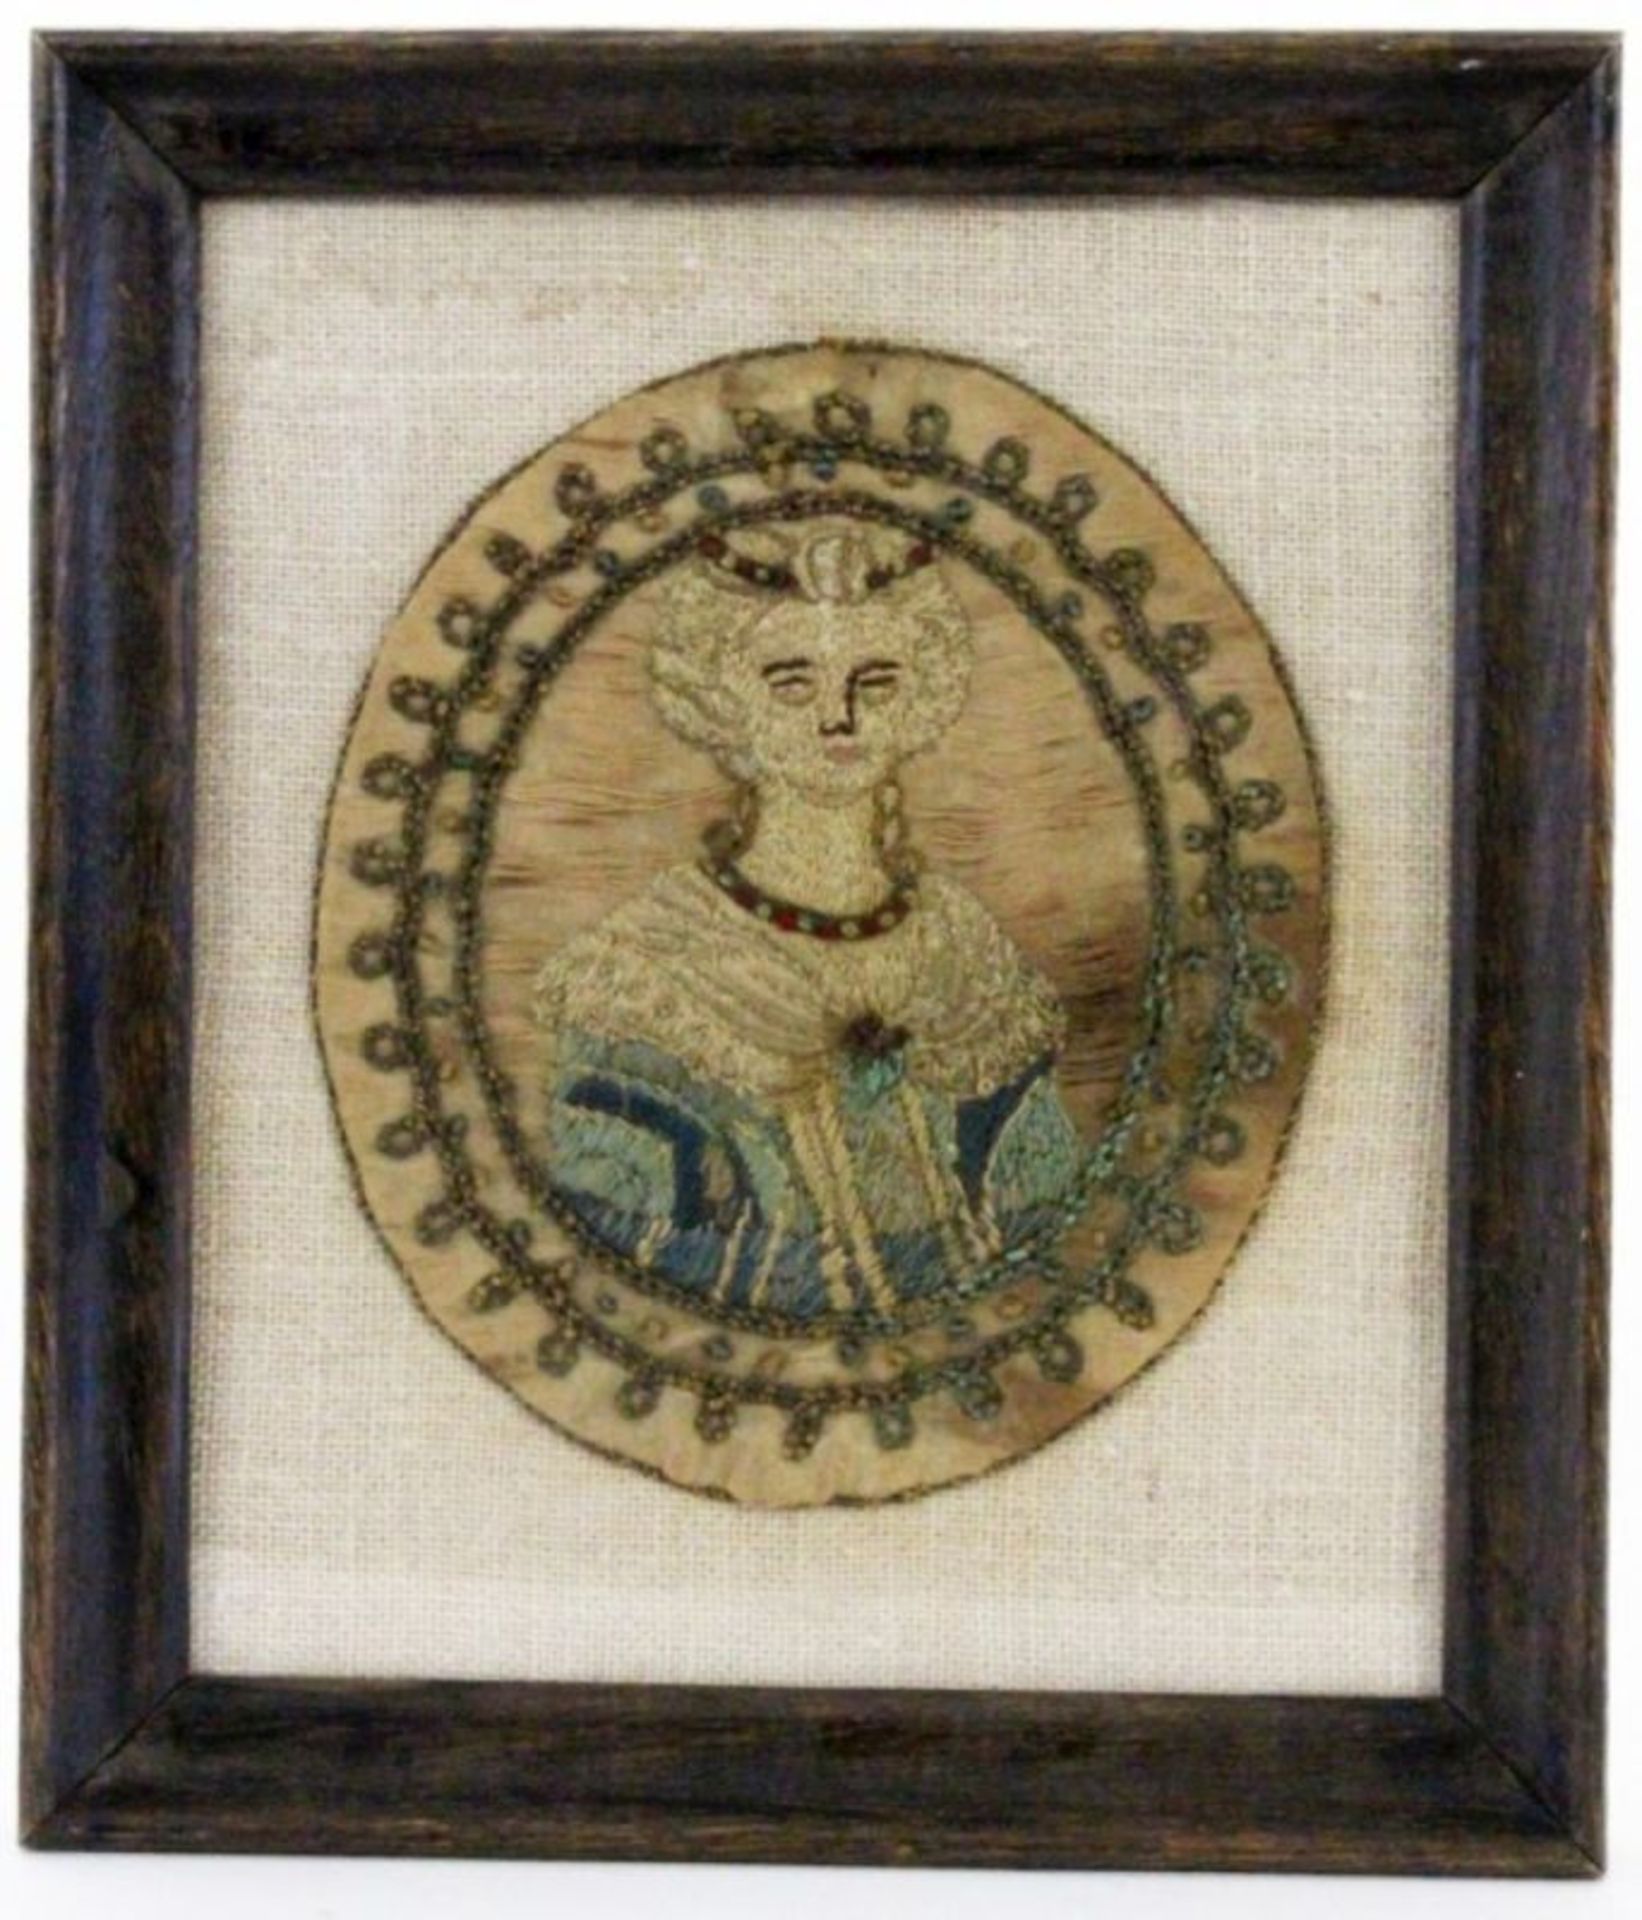 STICKBILDFrankreich, 18.Jh. Bildnis einer adeligen Dame. Ovales farbiges Stickbild. 14,5x13cm, Ra.AN